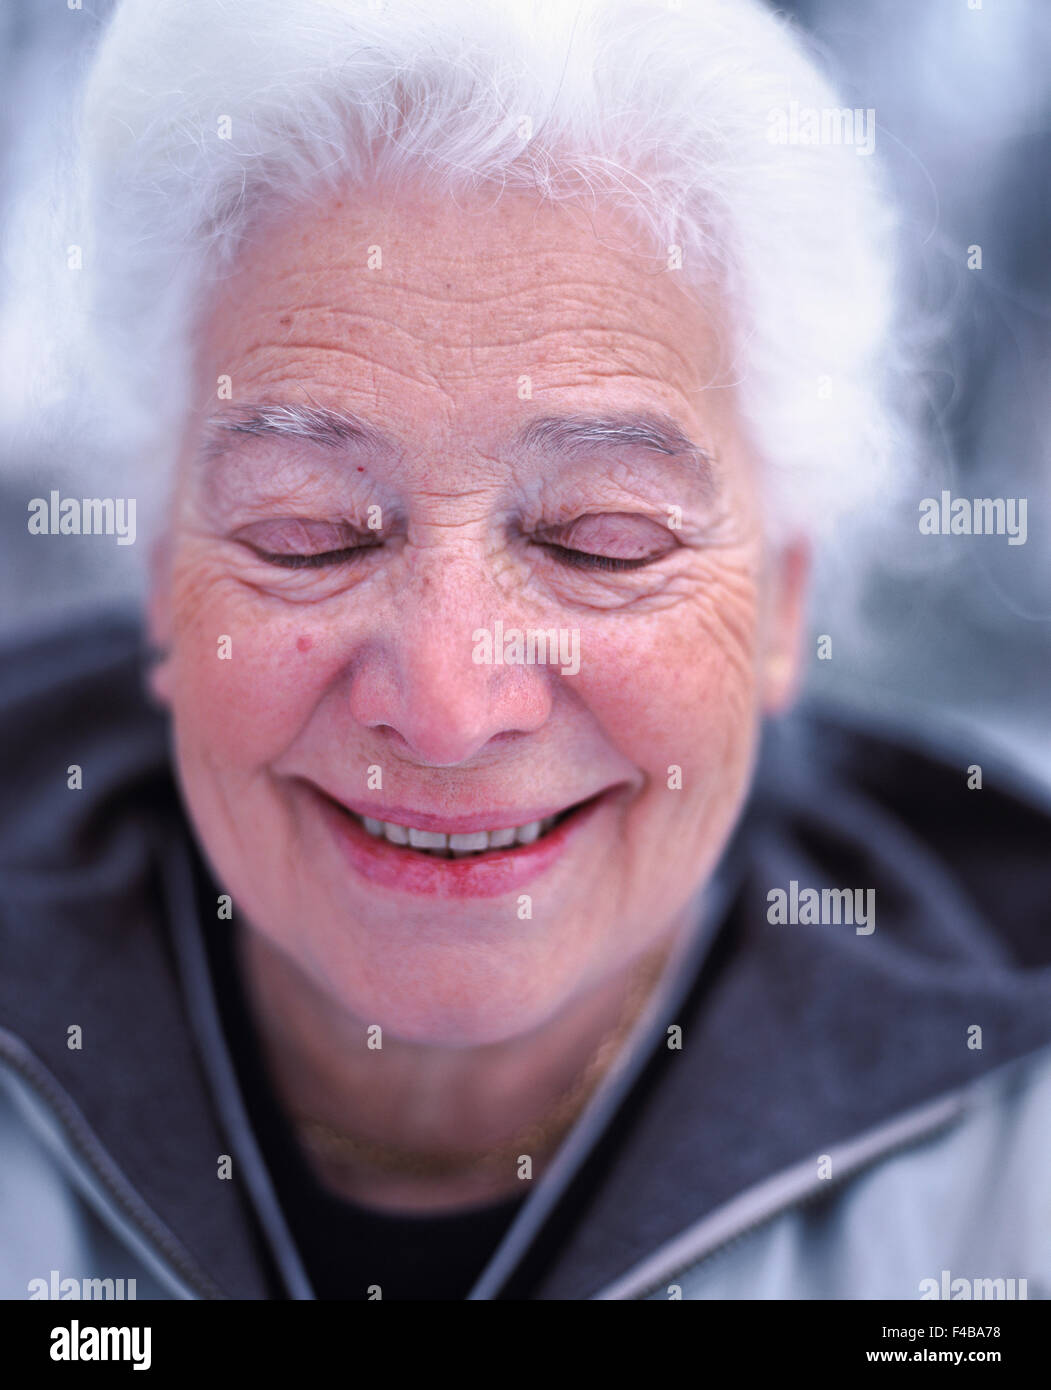 70-74 anni 75-79 anni adulti solo immagine a colori donna anziana chiudere gli occhi di fronte friendly grey-haired ridere felice vecchio una persona Foto Stock